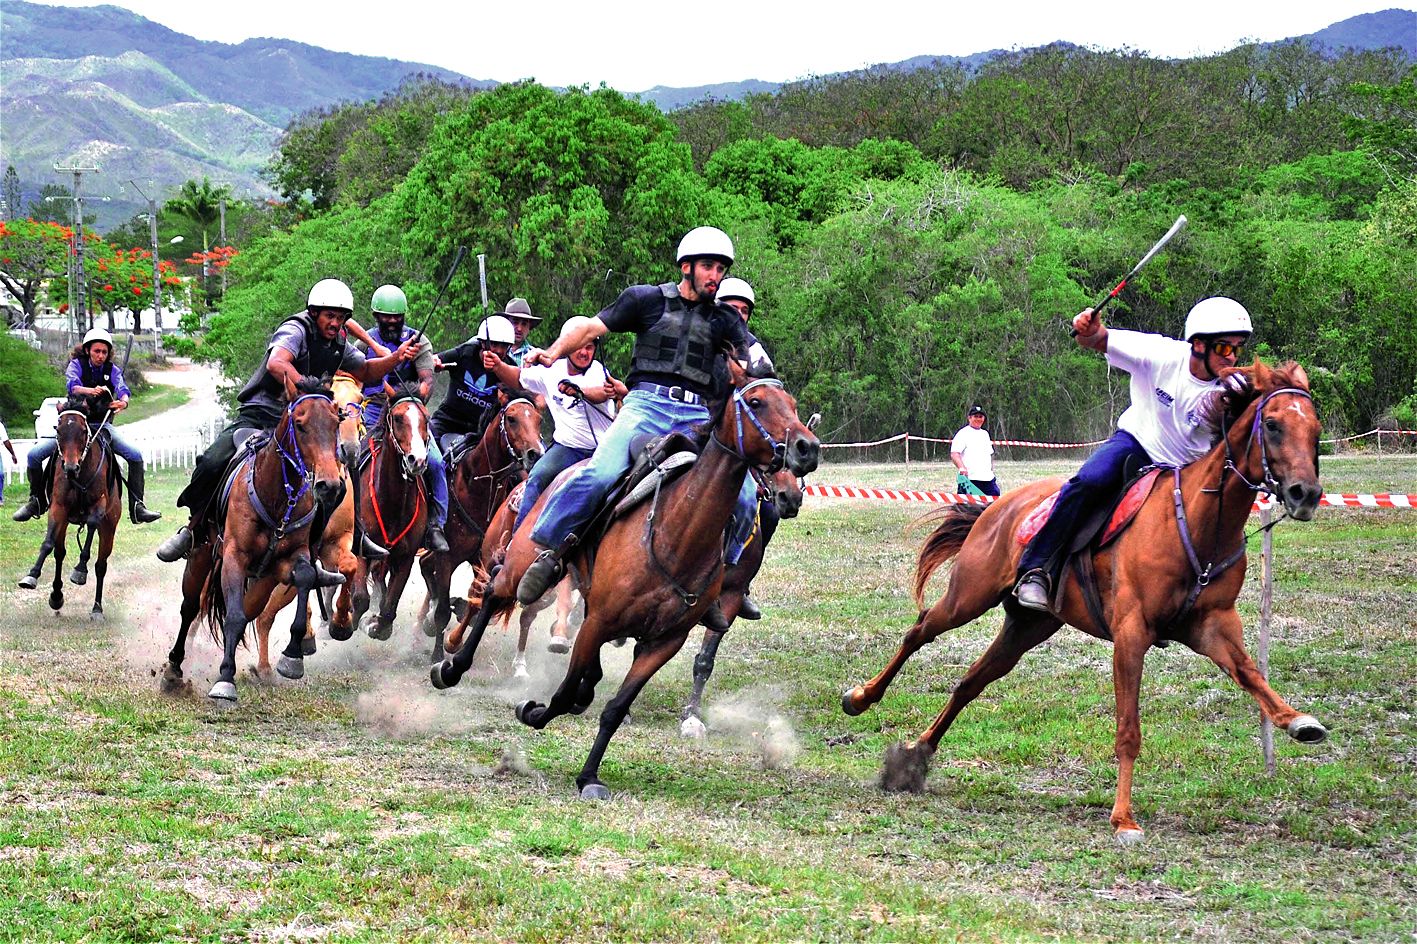 Le Comité équestre de Ouégoa organisera la Fête du cheval, samedi, sur le stade municipal.Photo Archives I.C.